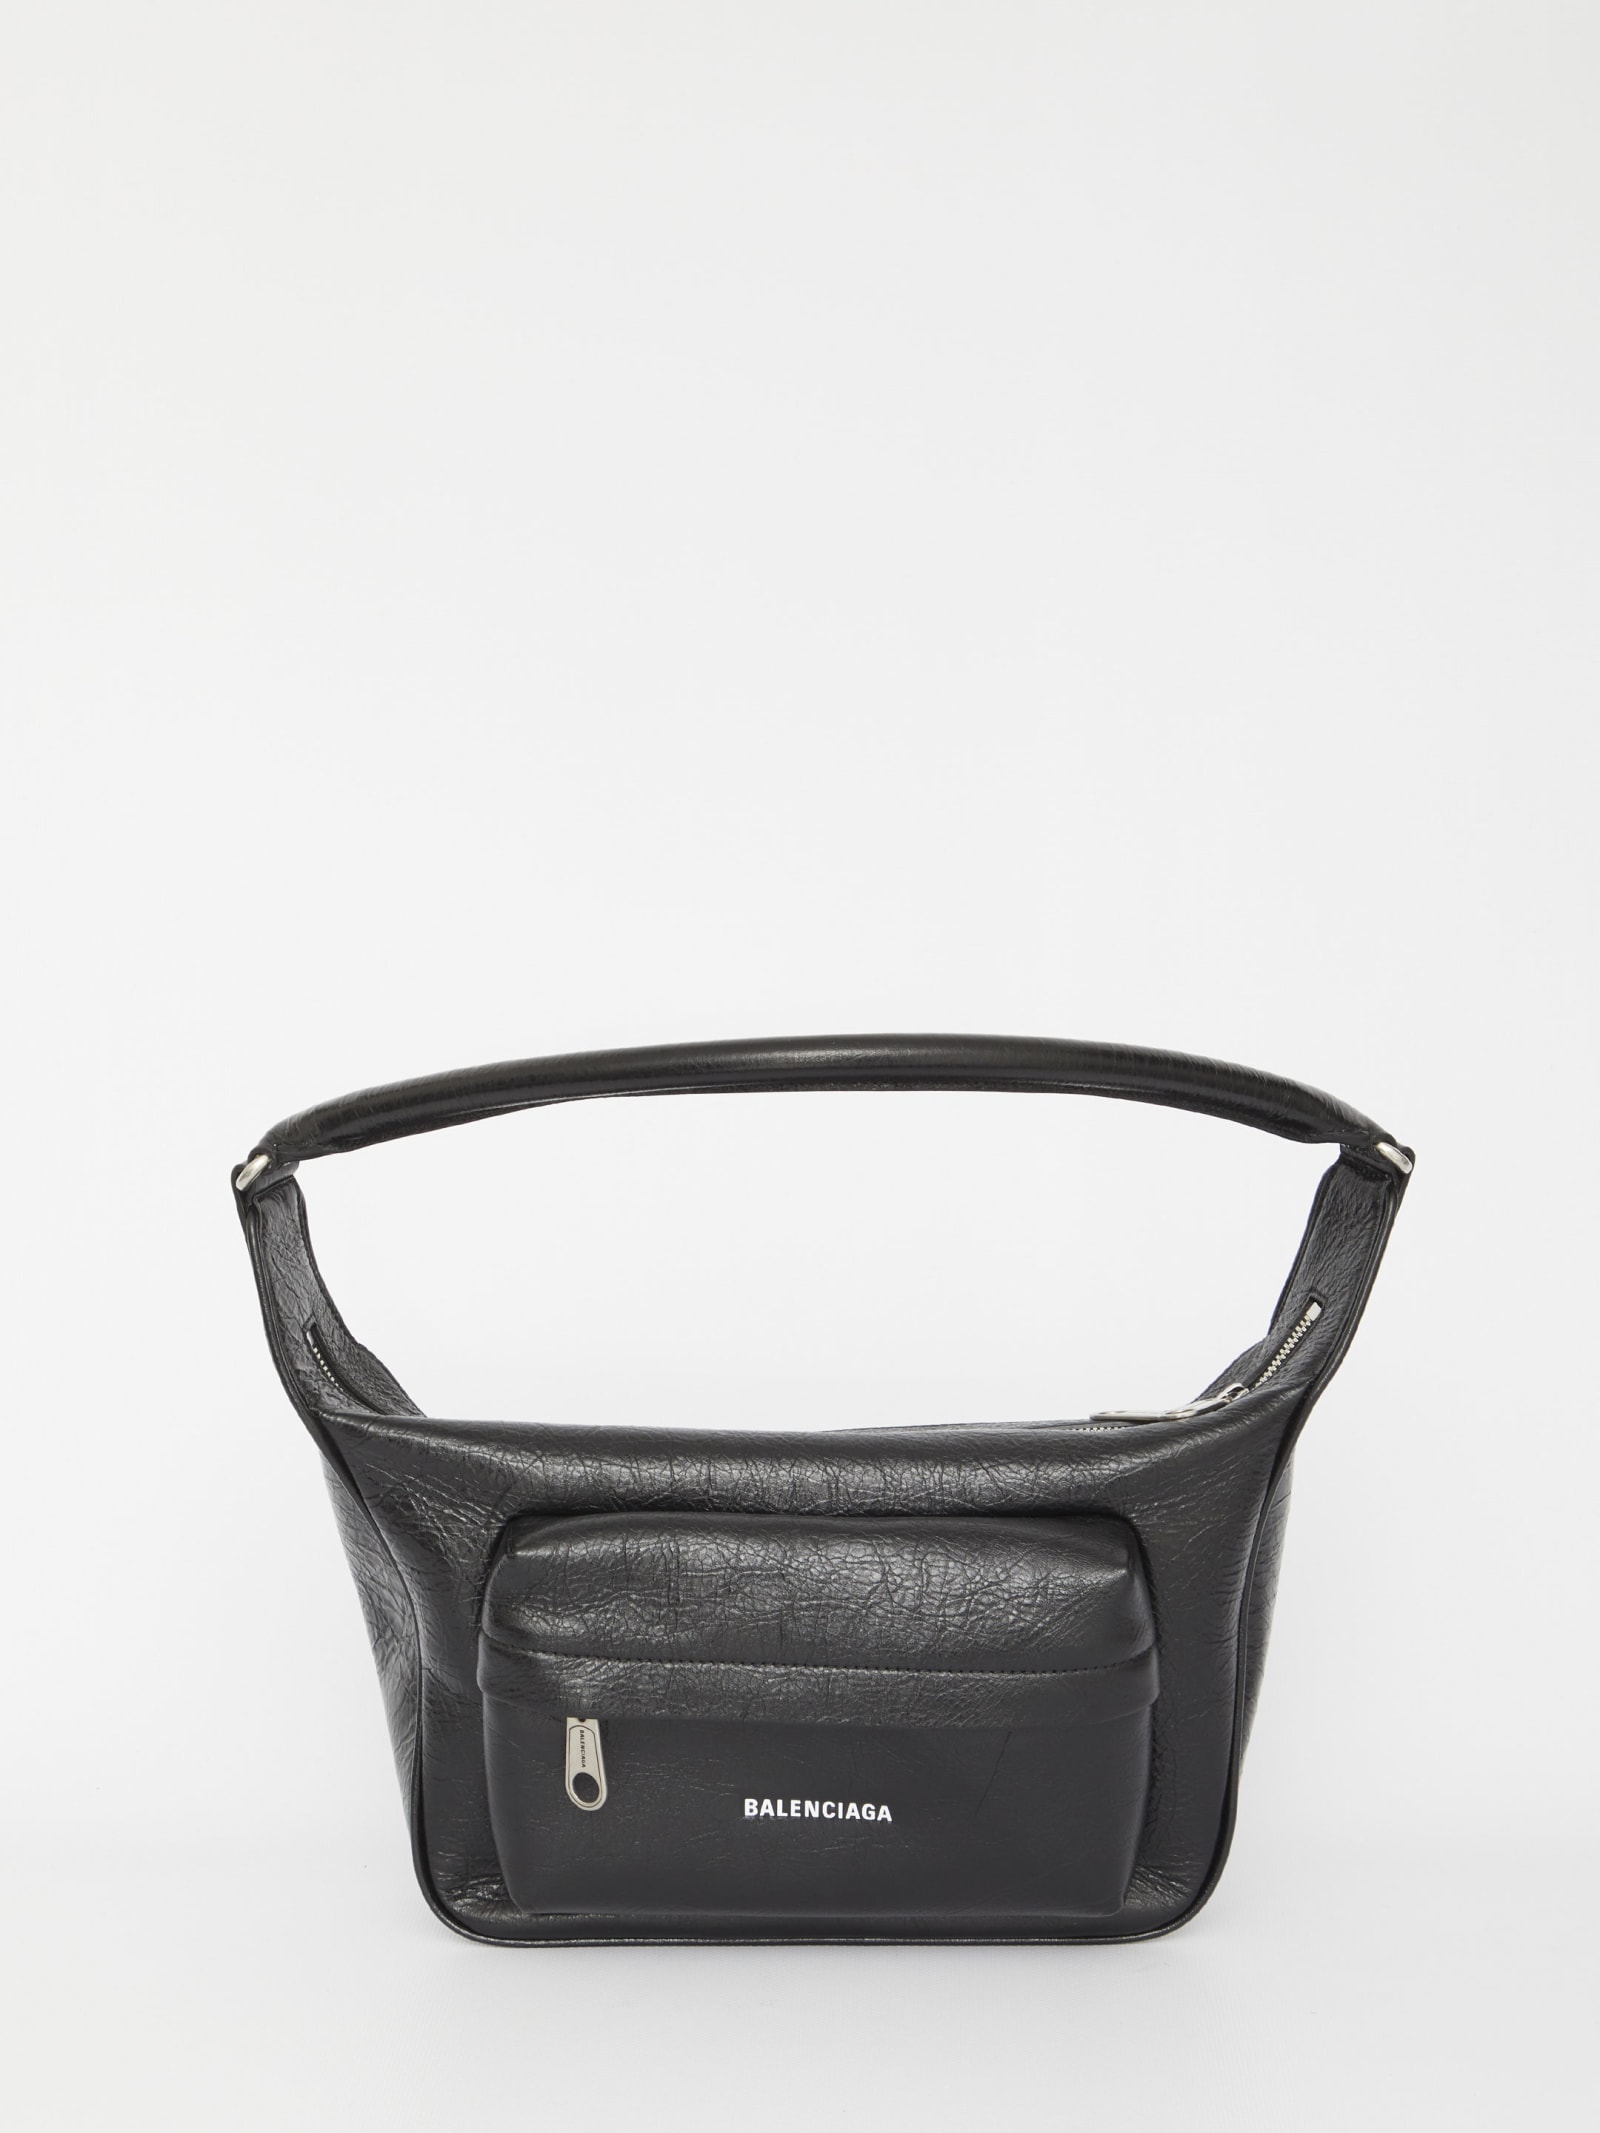 Balenciaga Medium Raver Bag